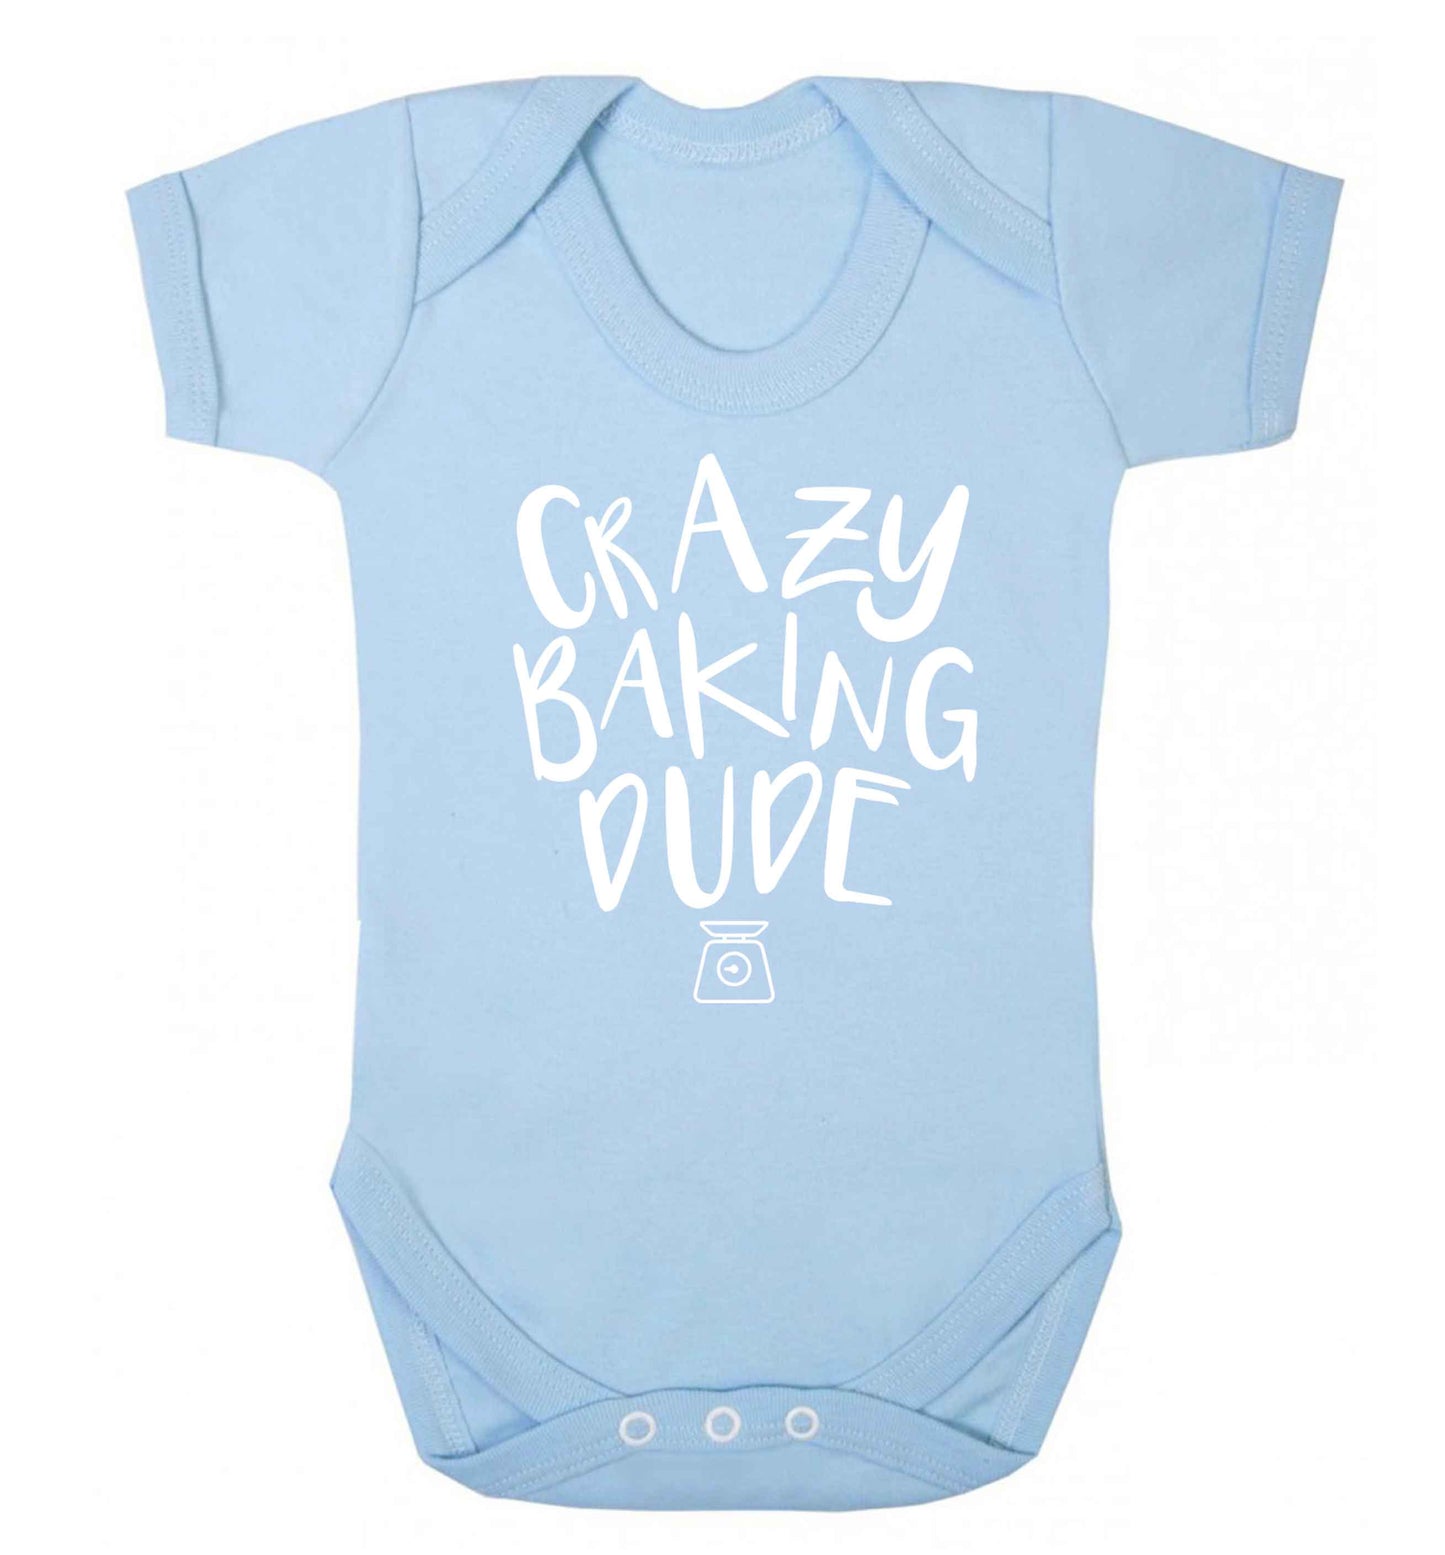 Crazy baking dude Baby Vest pale blue 18-24 months